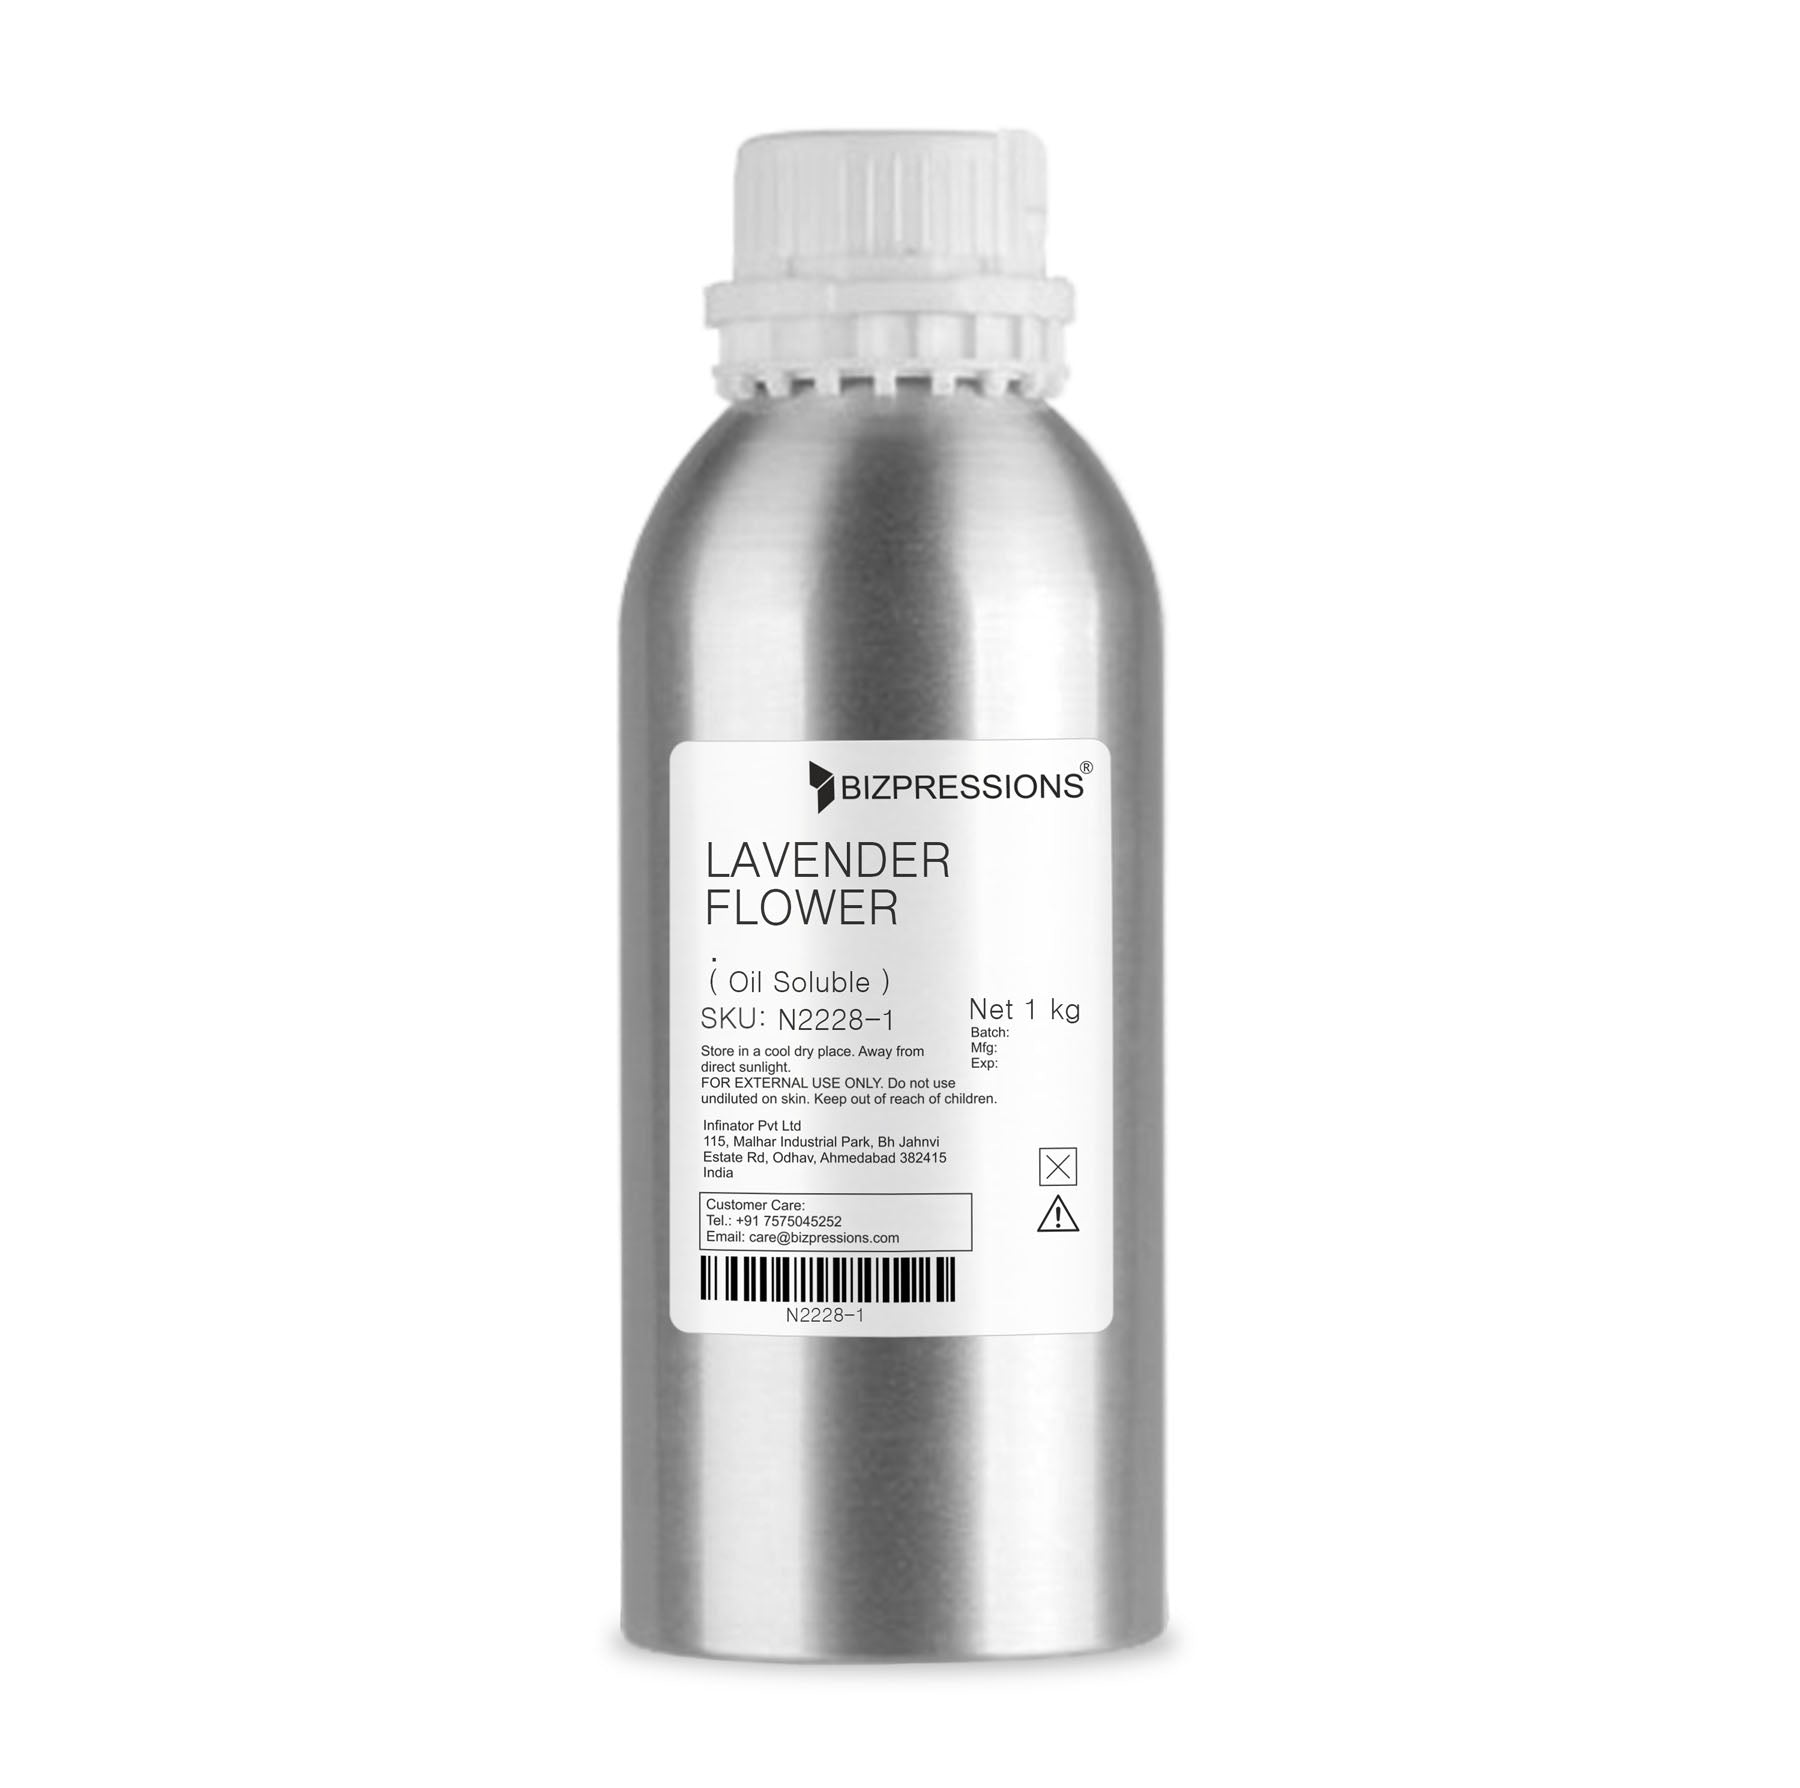 LAVENDER FLOWER - Fragrance ( Oil Soluble ) - 1 kg